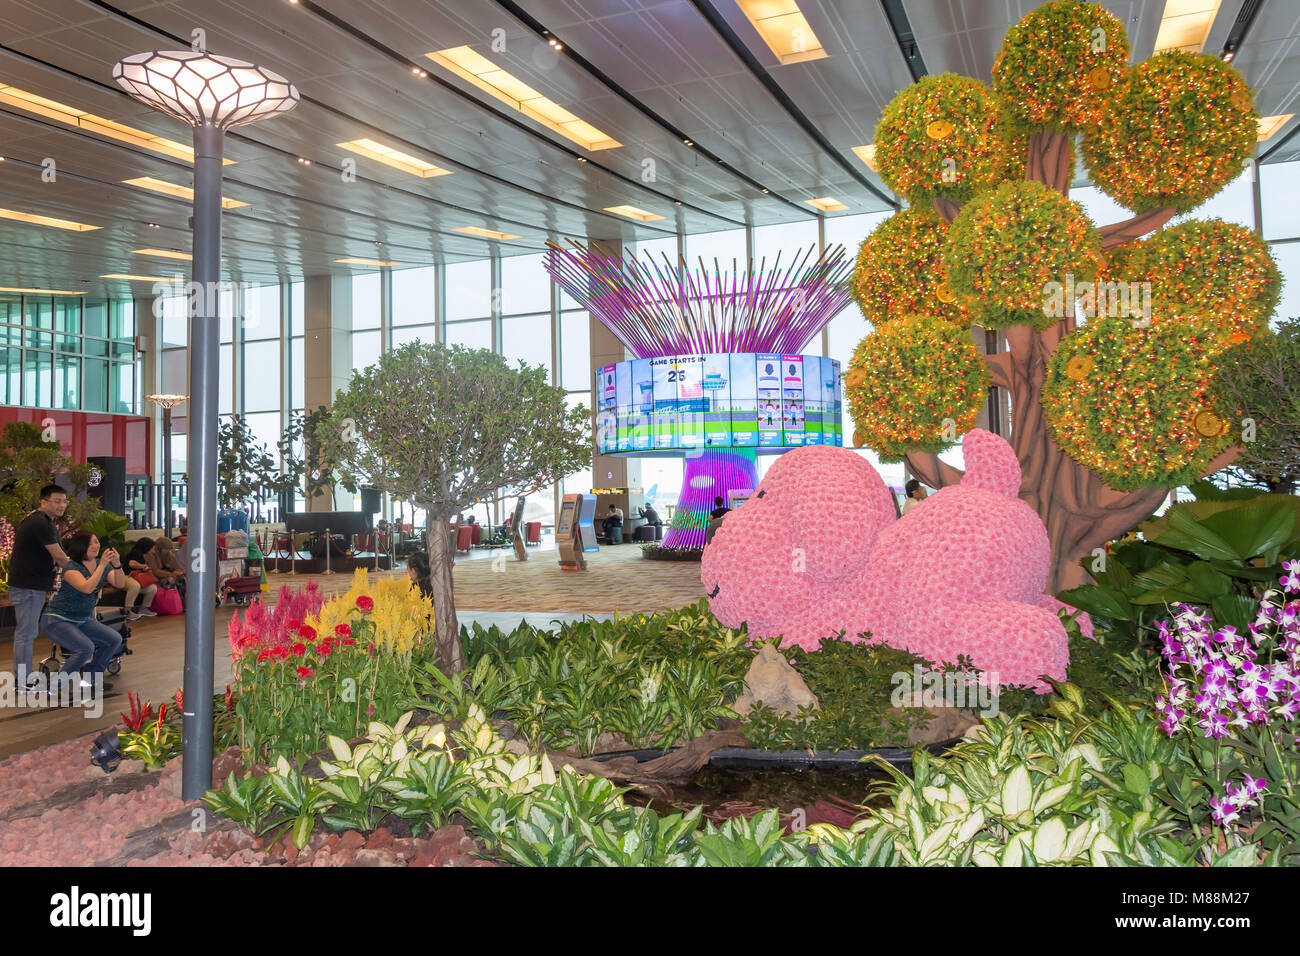 La instalación interactiva de árbol Social y jardín en la sala de tránsito, la Terminal 1, el aeropuerto Changi de Singapur, Changi, Singapur Foto de stock